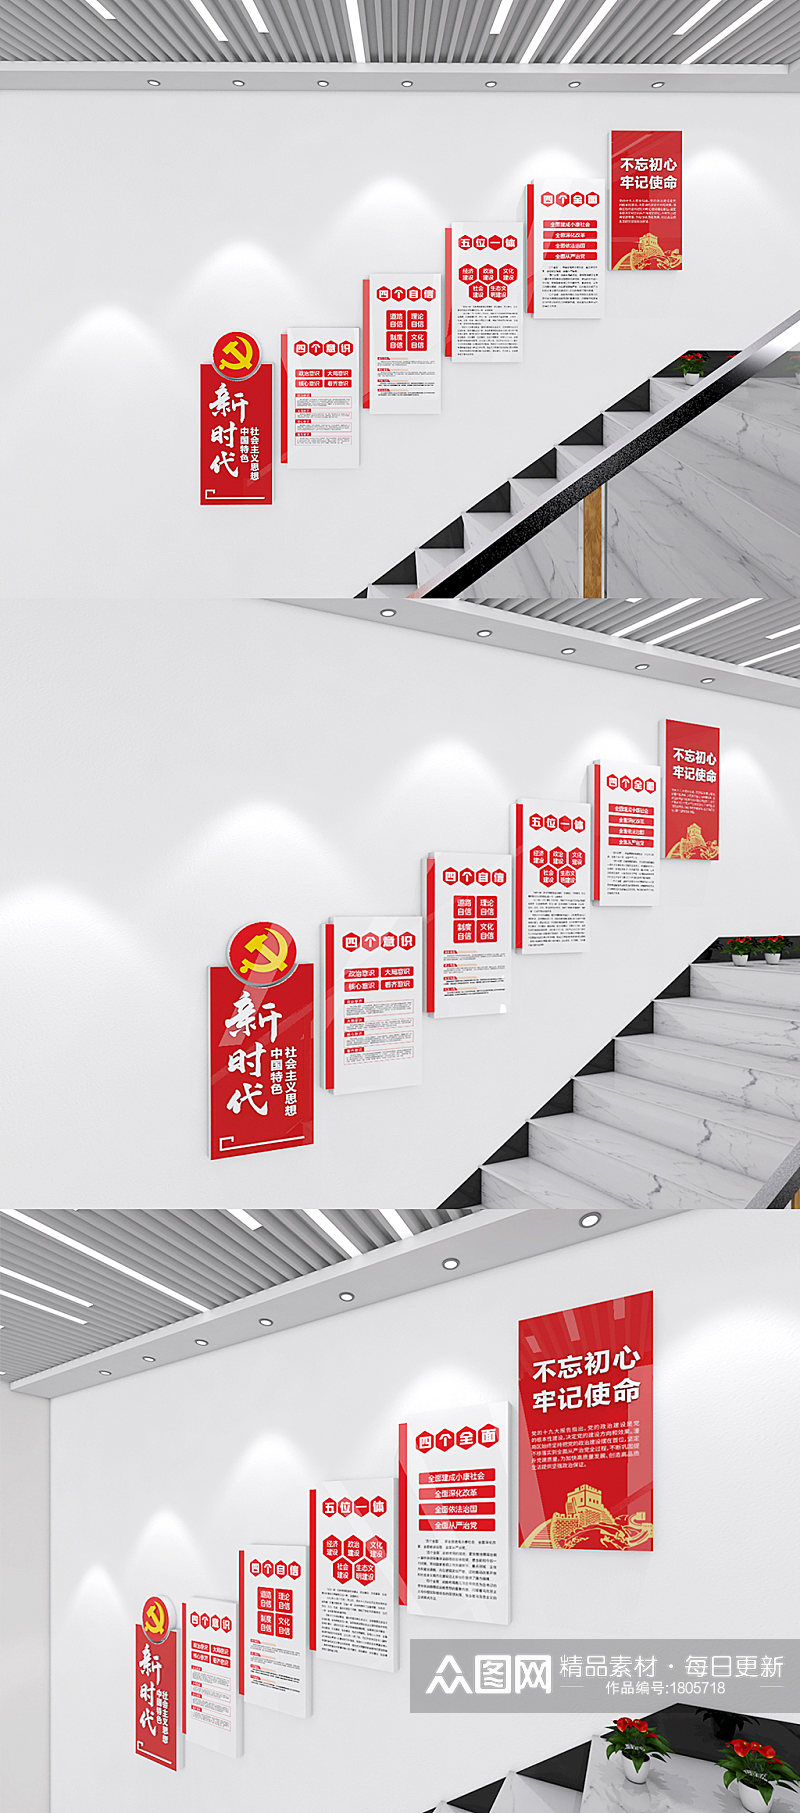 新时代党建思想四个自信四个意识楼梯 中国特色社会主义思想文化墙素材